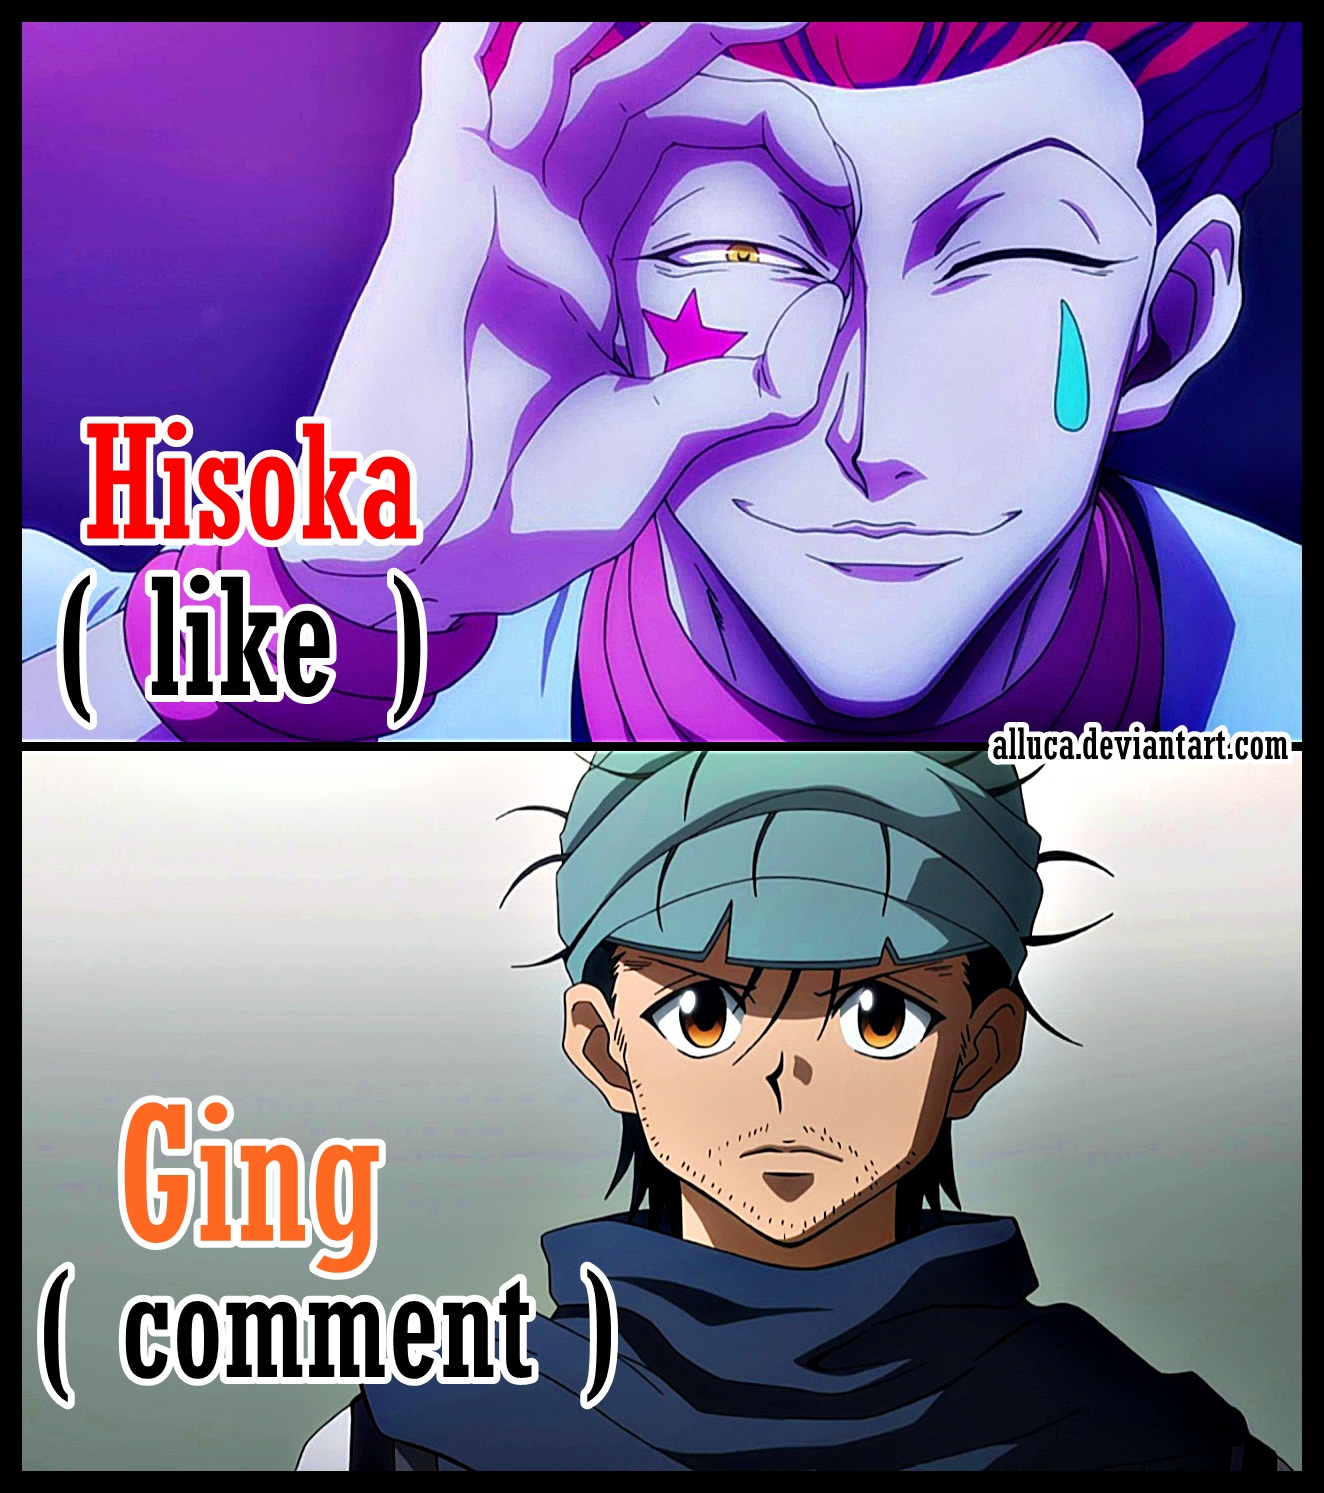 La verdad sobre la foto de Hisoka vs Ging